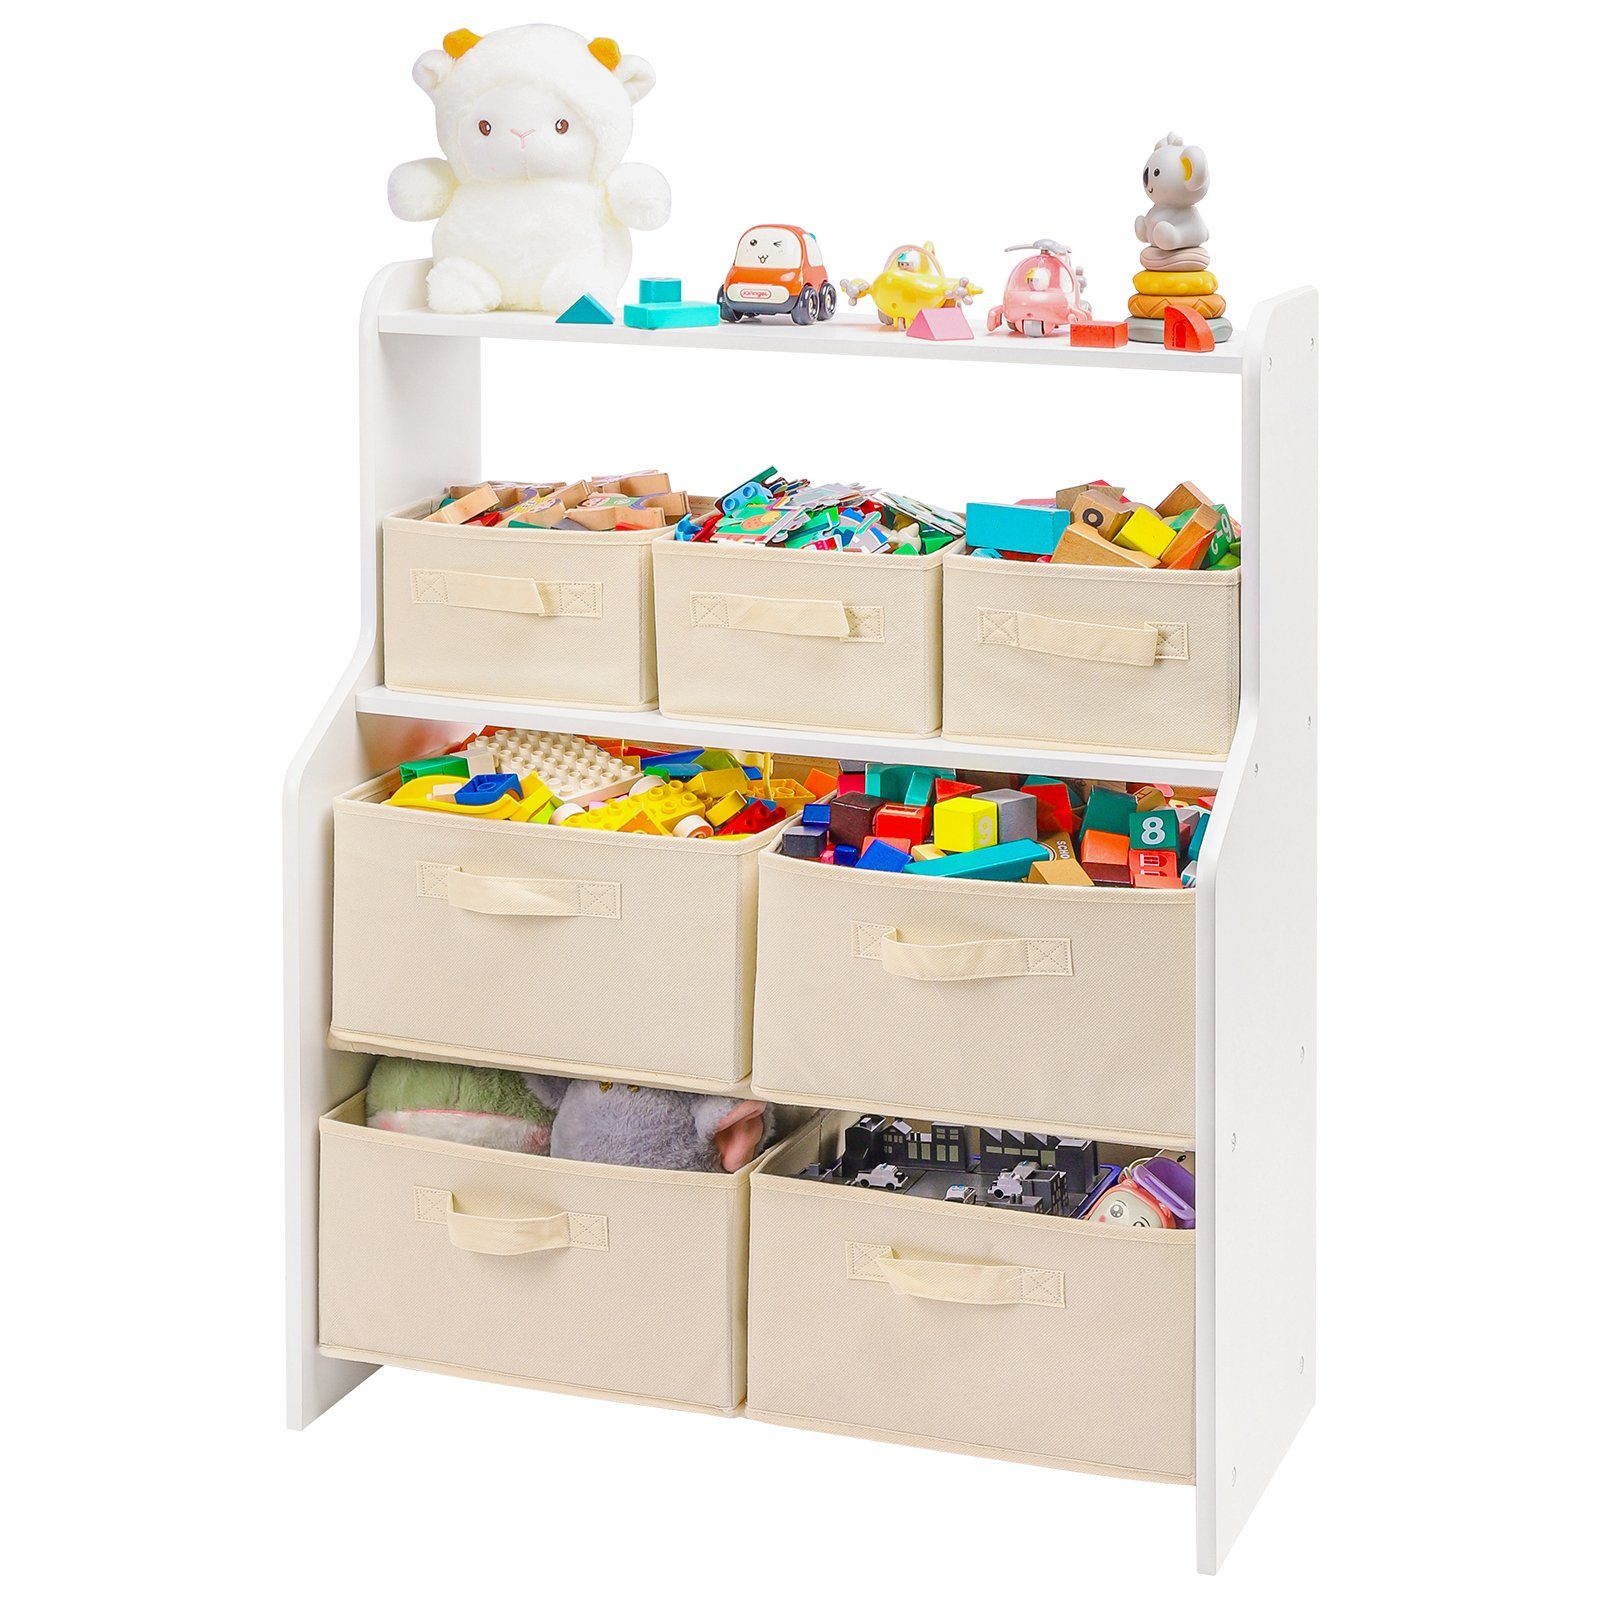 Yorbay Standregal Spielzeugregal Kinderzimmerregal mit 7 Aufbewahrungsboxen, 62.4 x 30 x 80CM, Kinder-Regal für Spielzeug, Spielzeug-Organizer